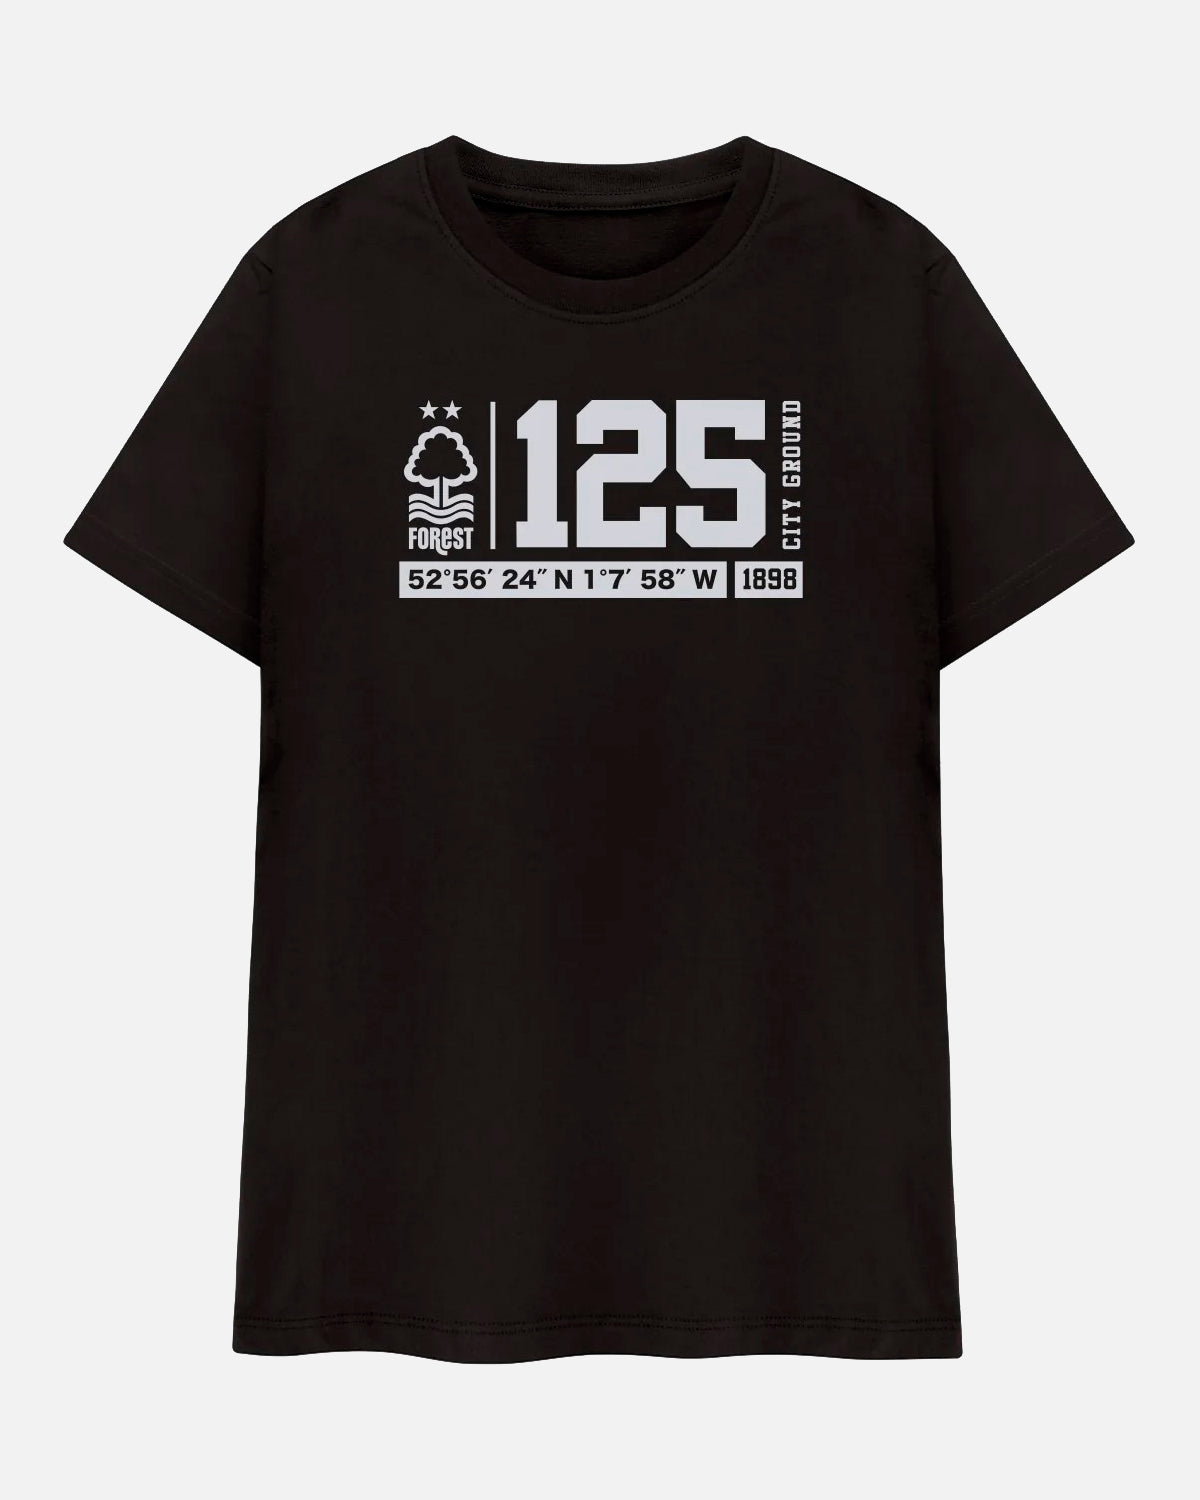 NFFC Black 125 Years T-Shirt